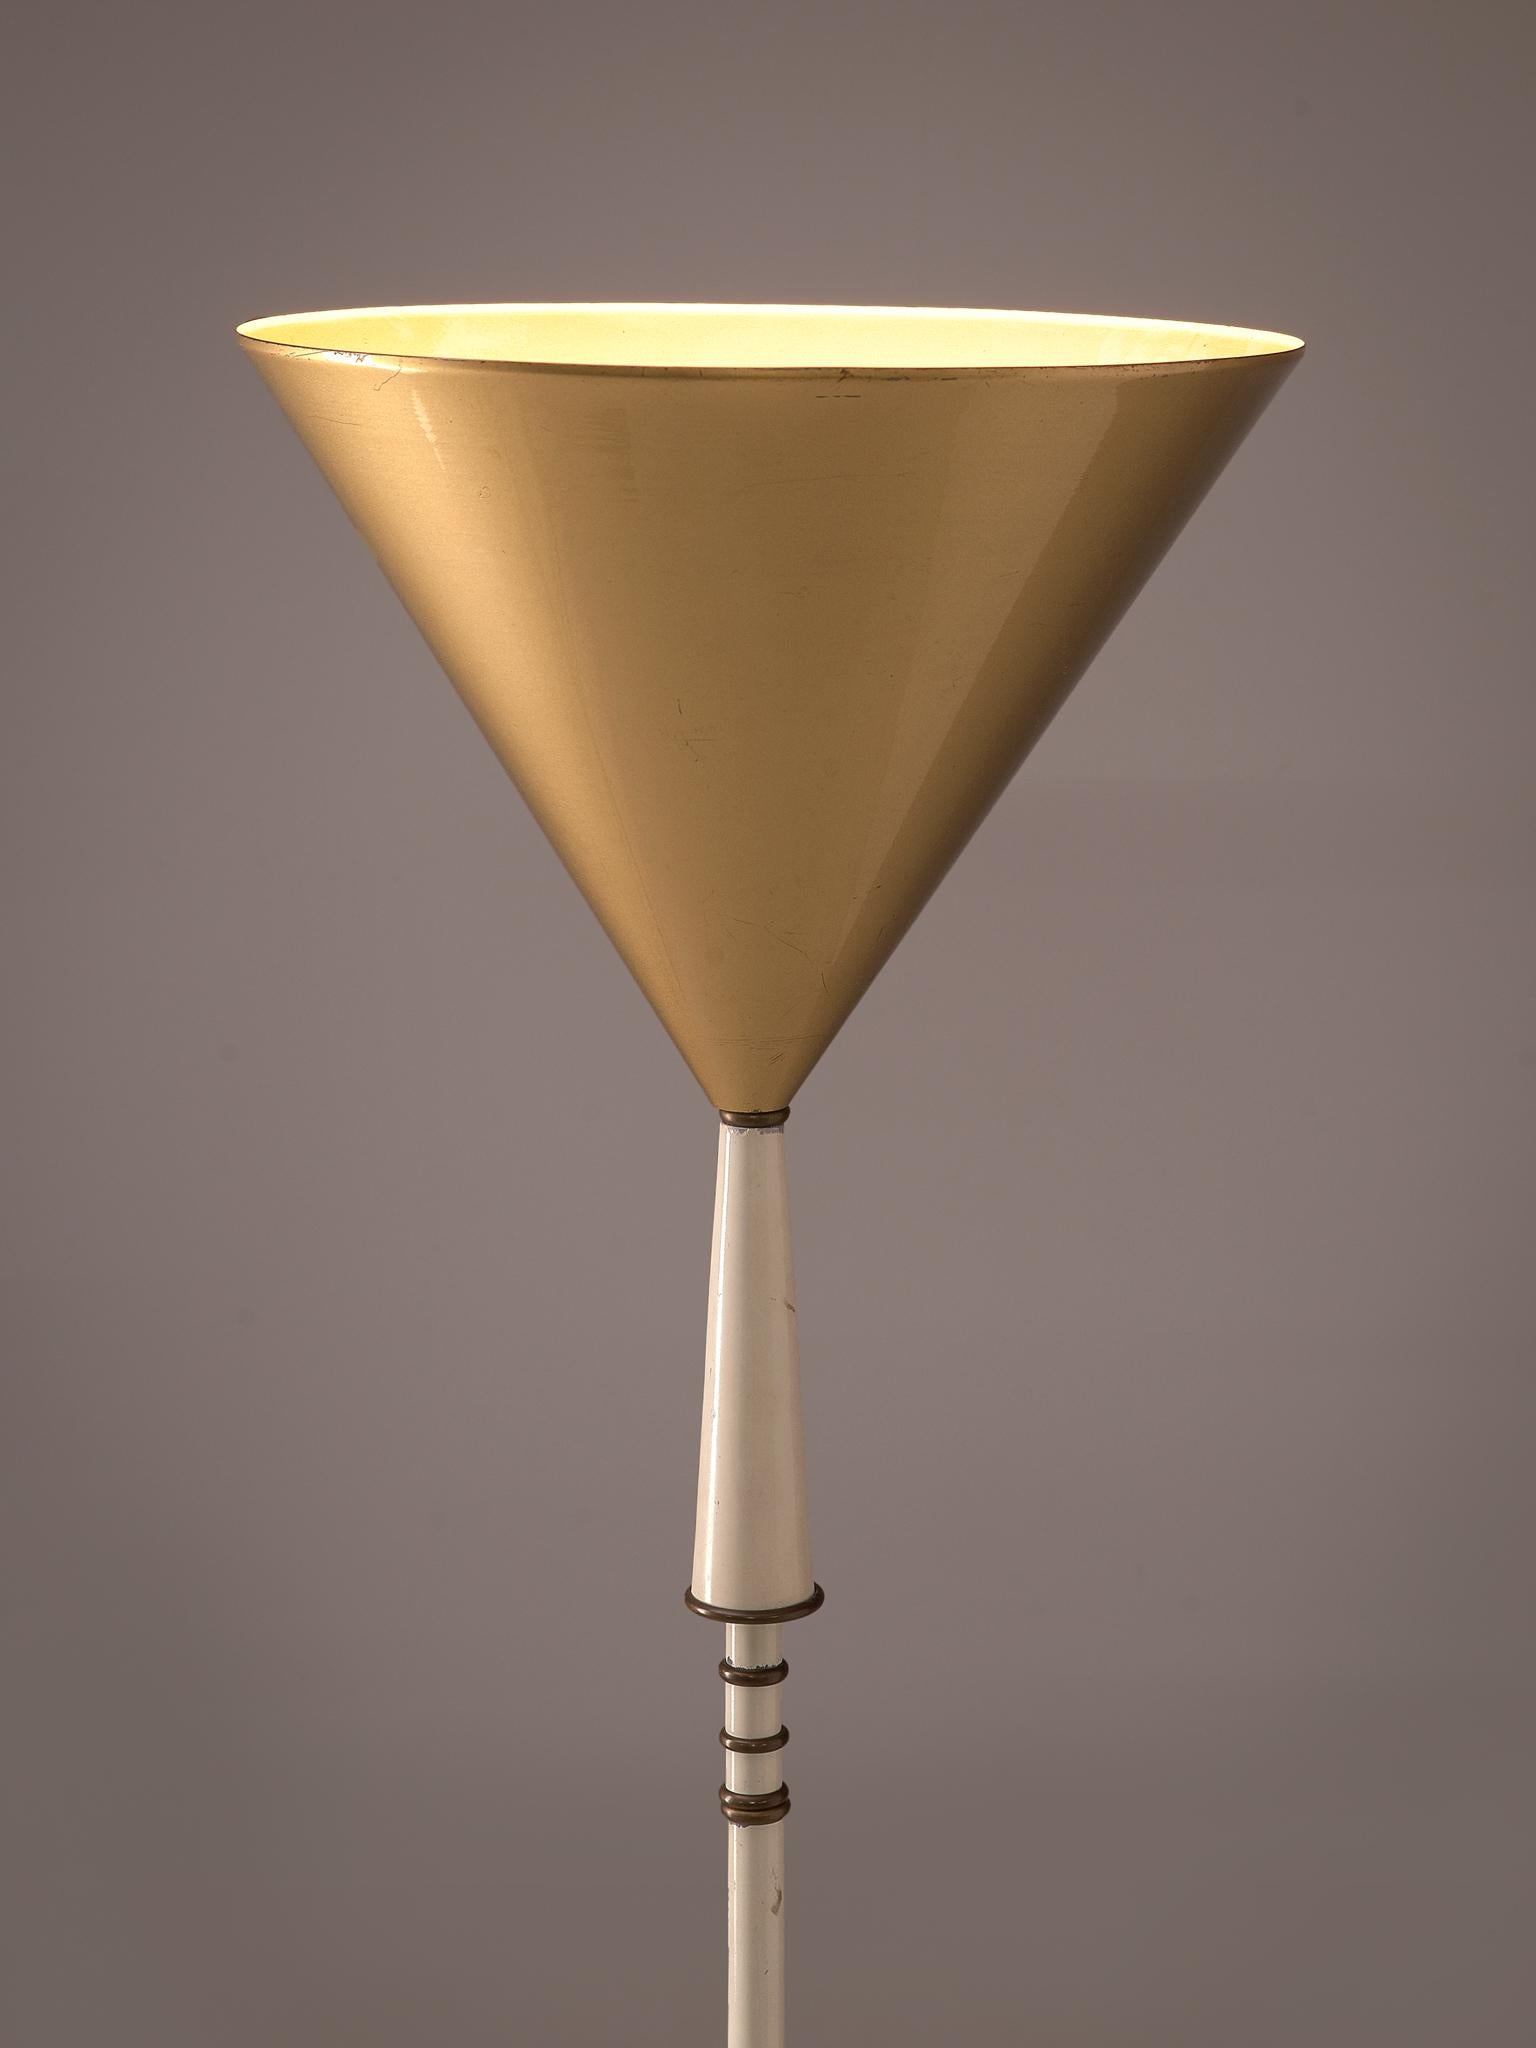 Mid-Century Modern Italian Floor Lamp with Tripod Foot